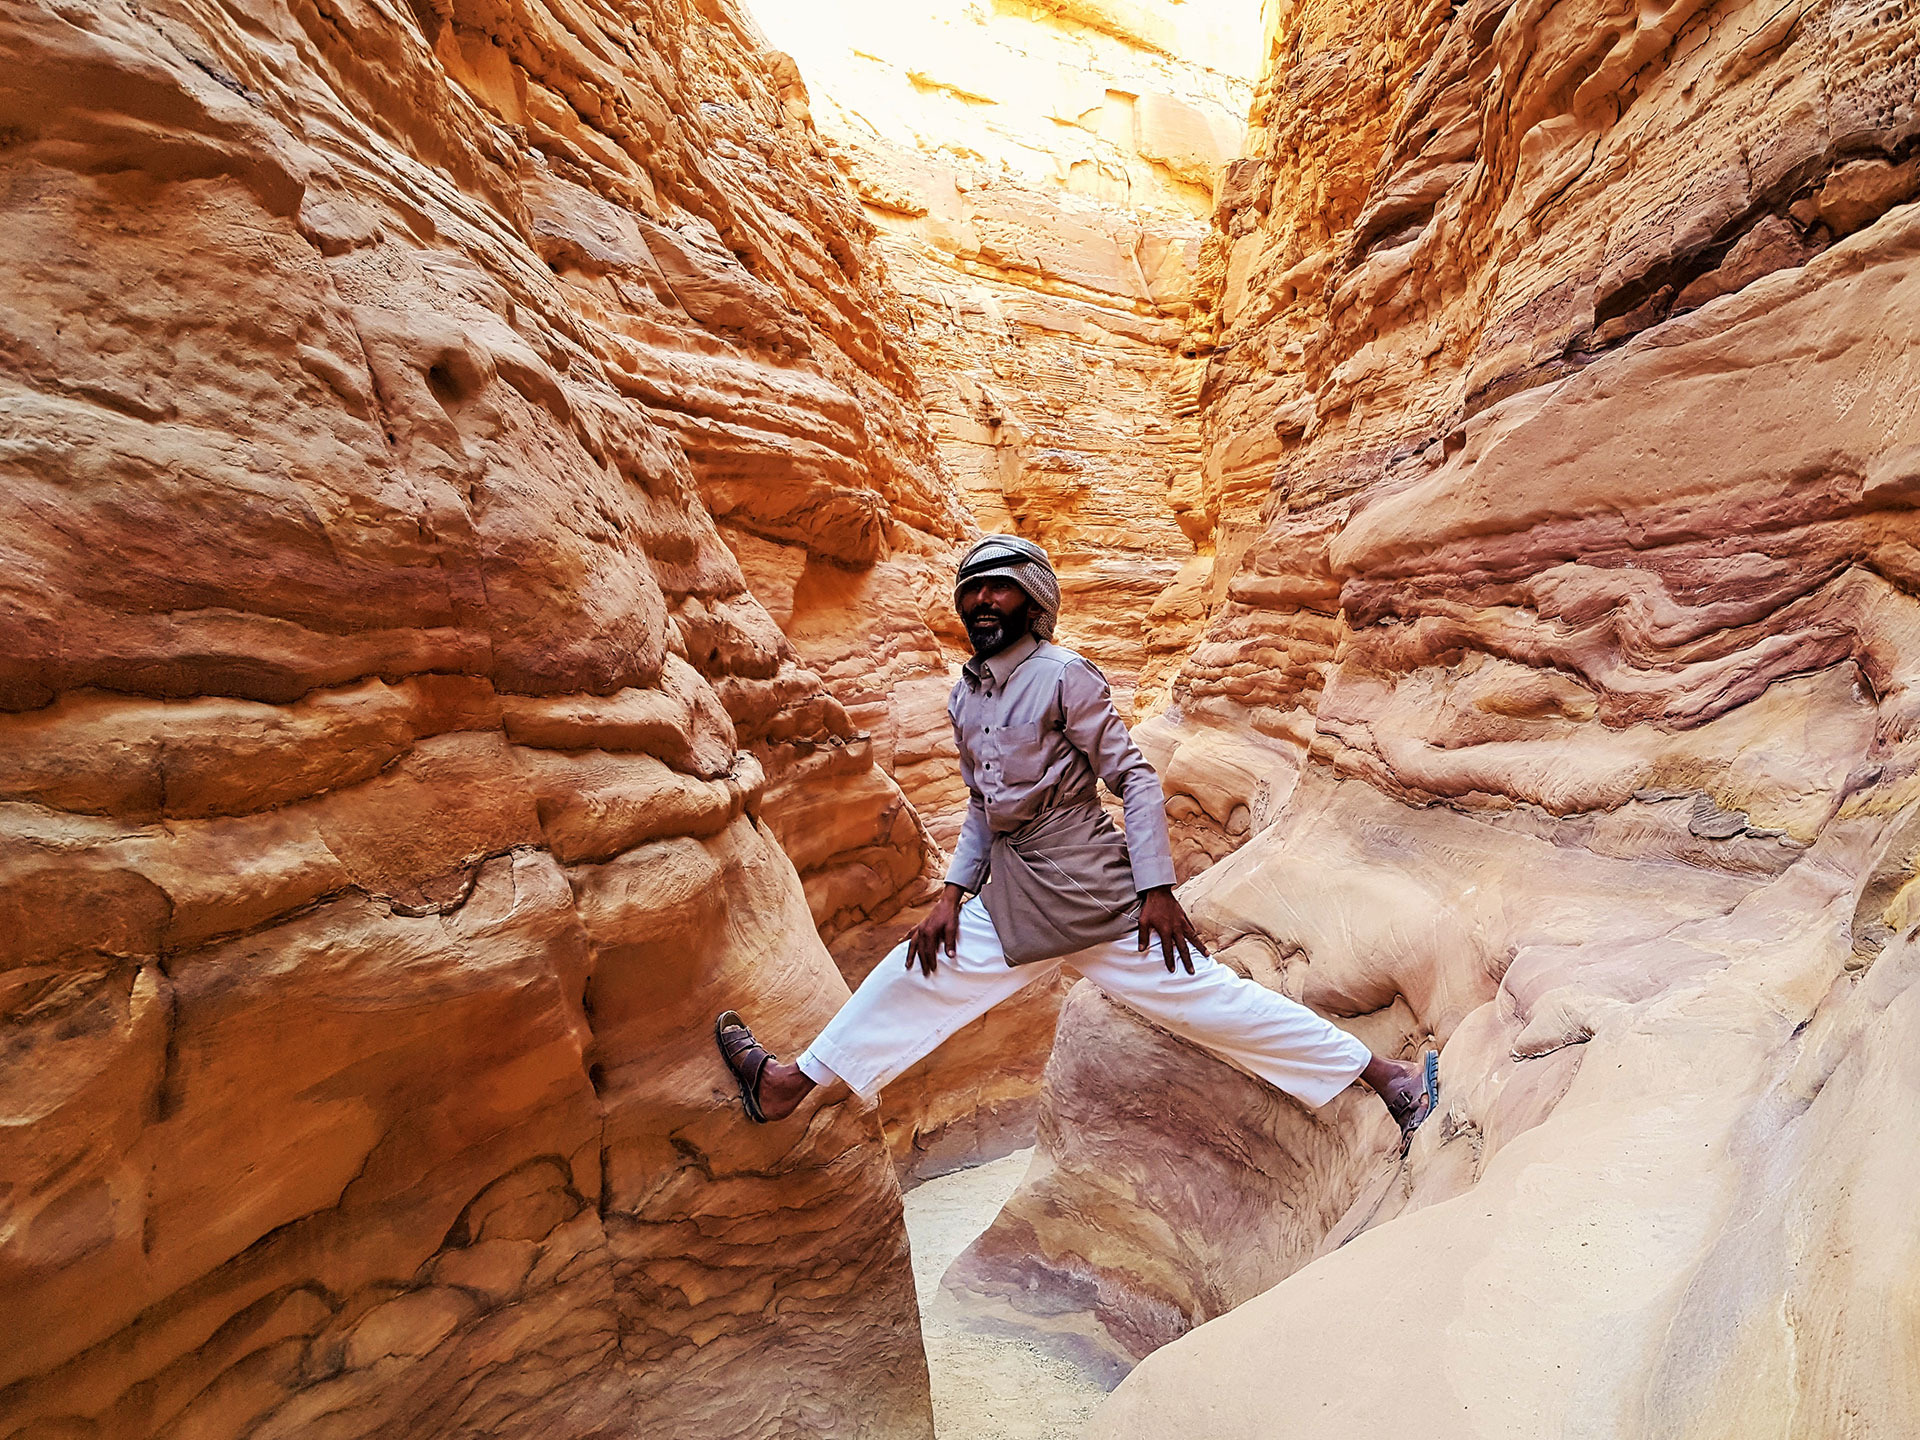 Musallem in the Sinai desert straddling two rocks